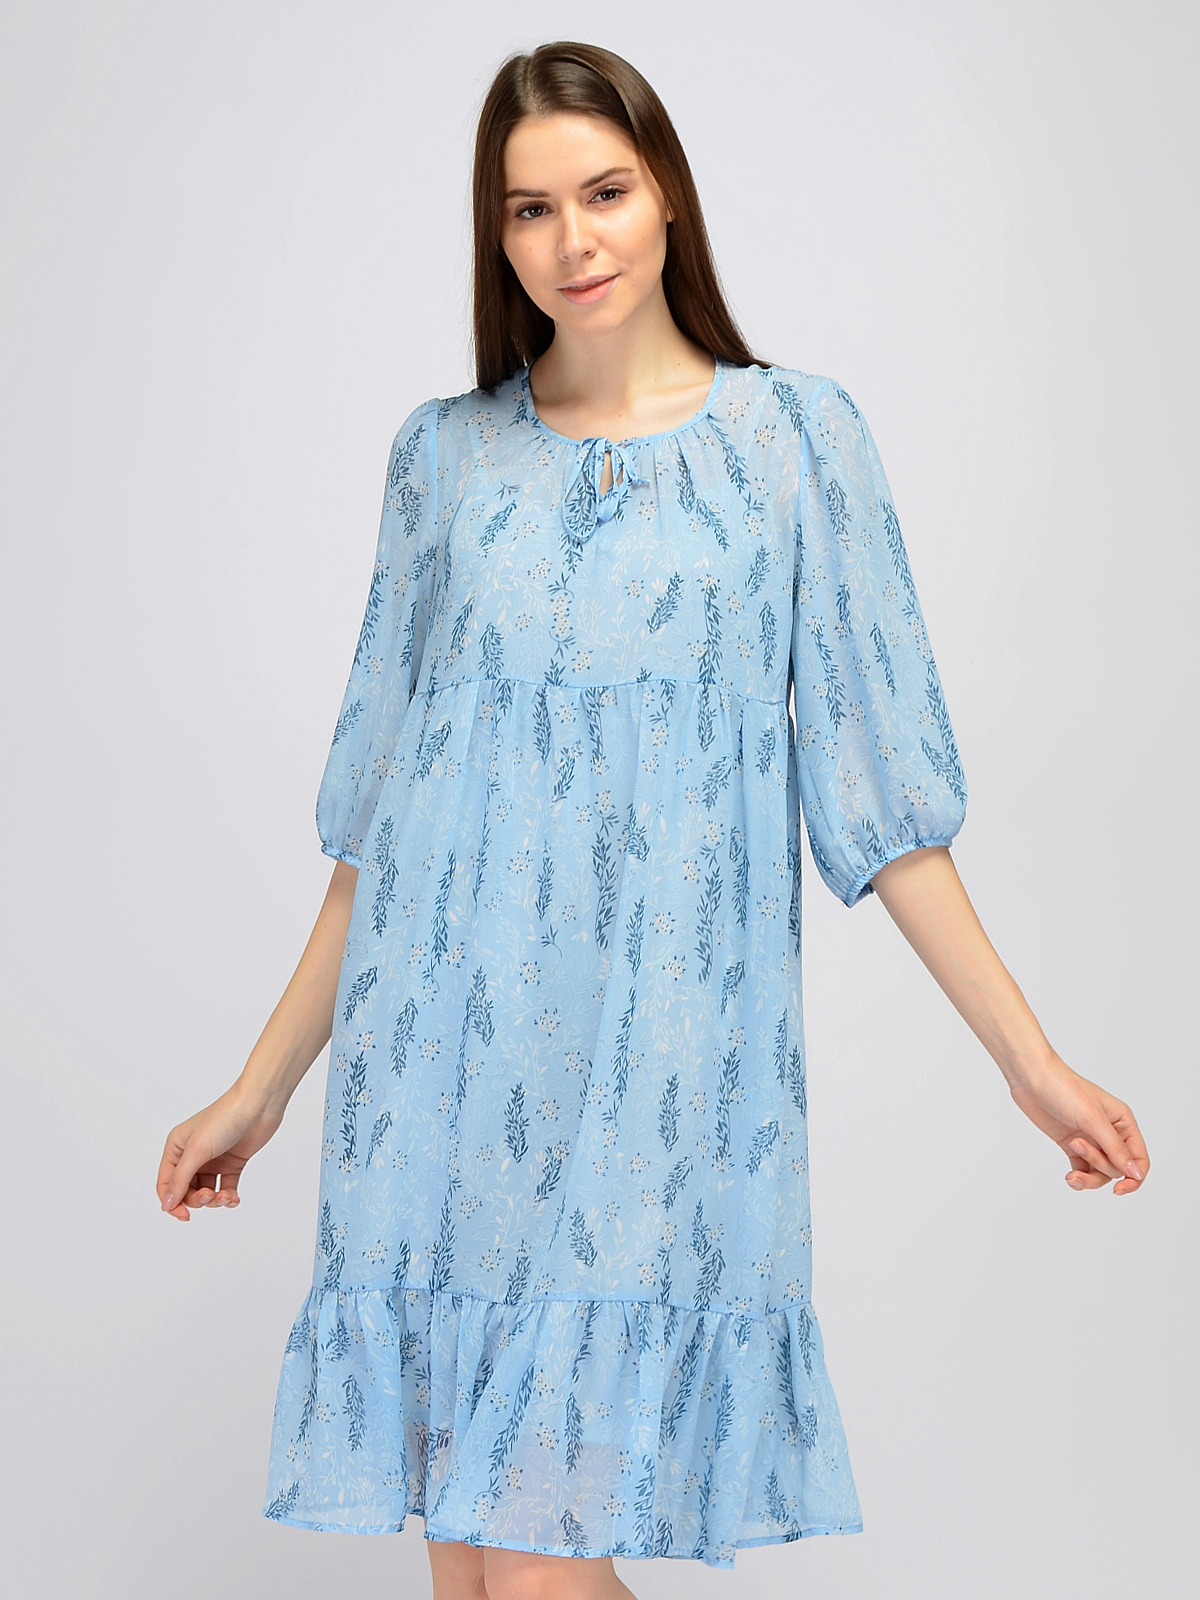 Платье женское Каляев 71482 голубое 44 RU